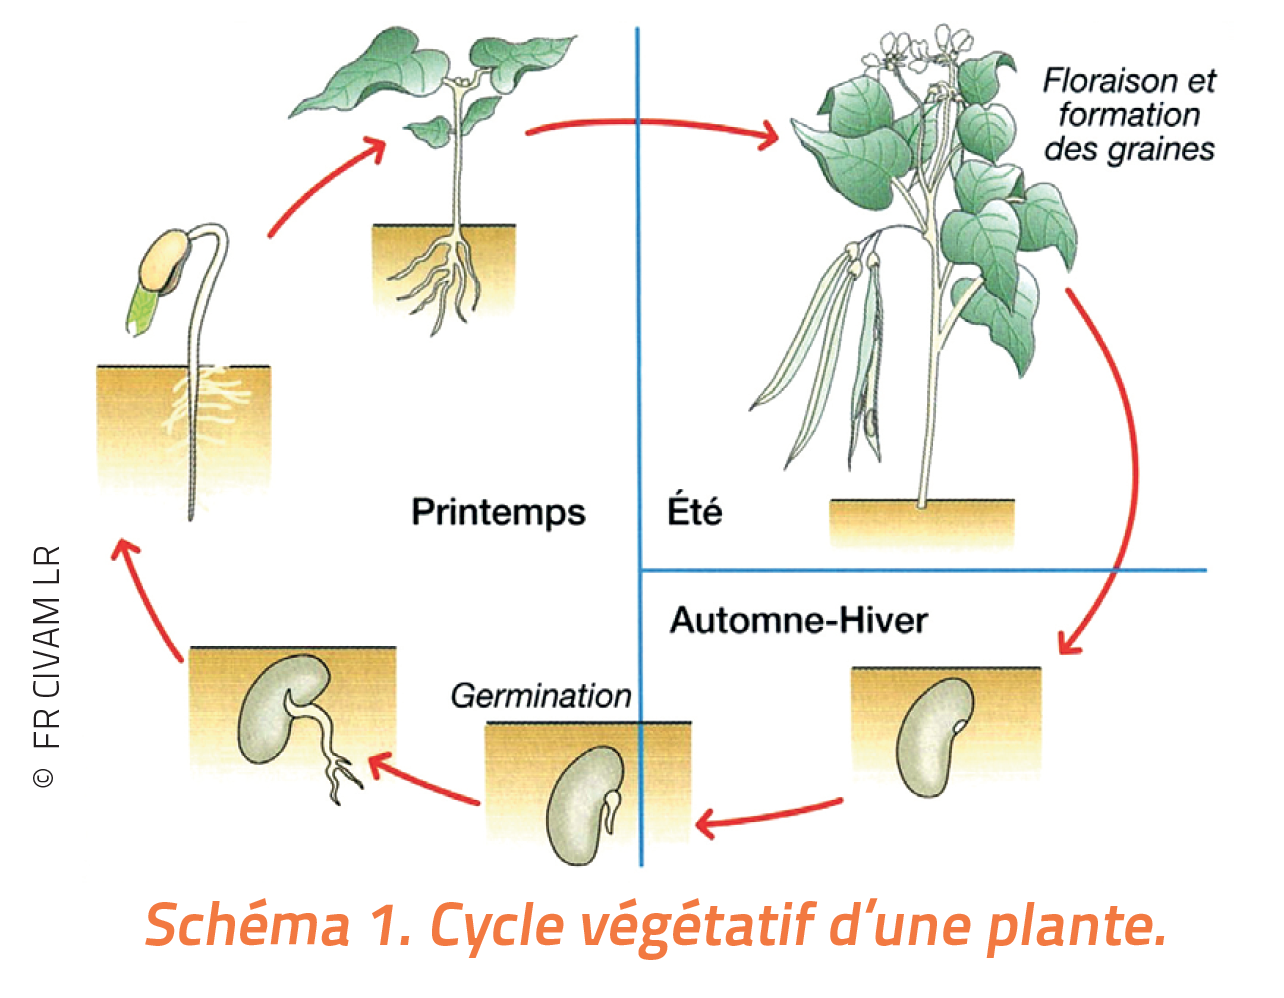 schéma illustré du cycle végétatif d'une plante